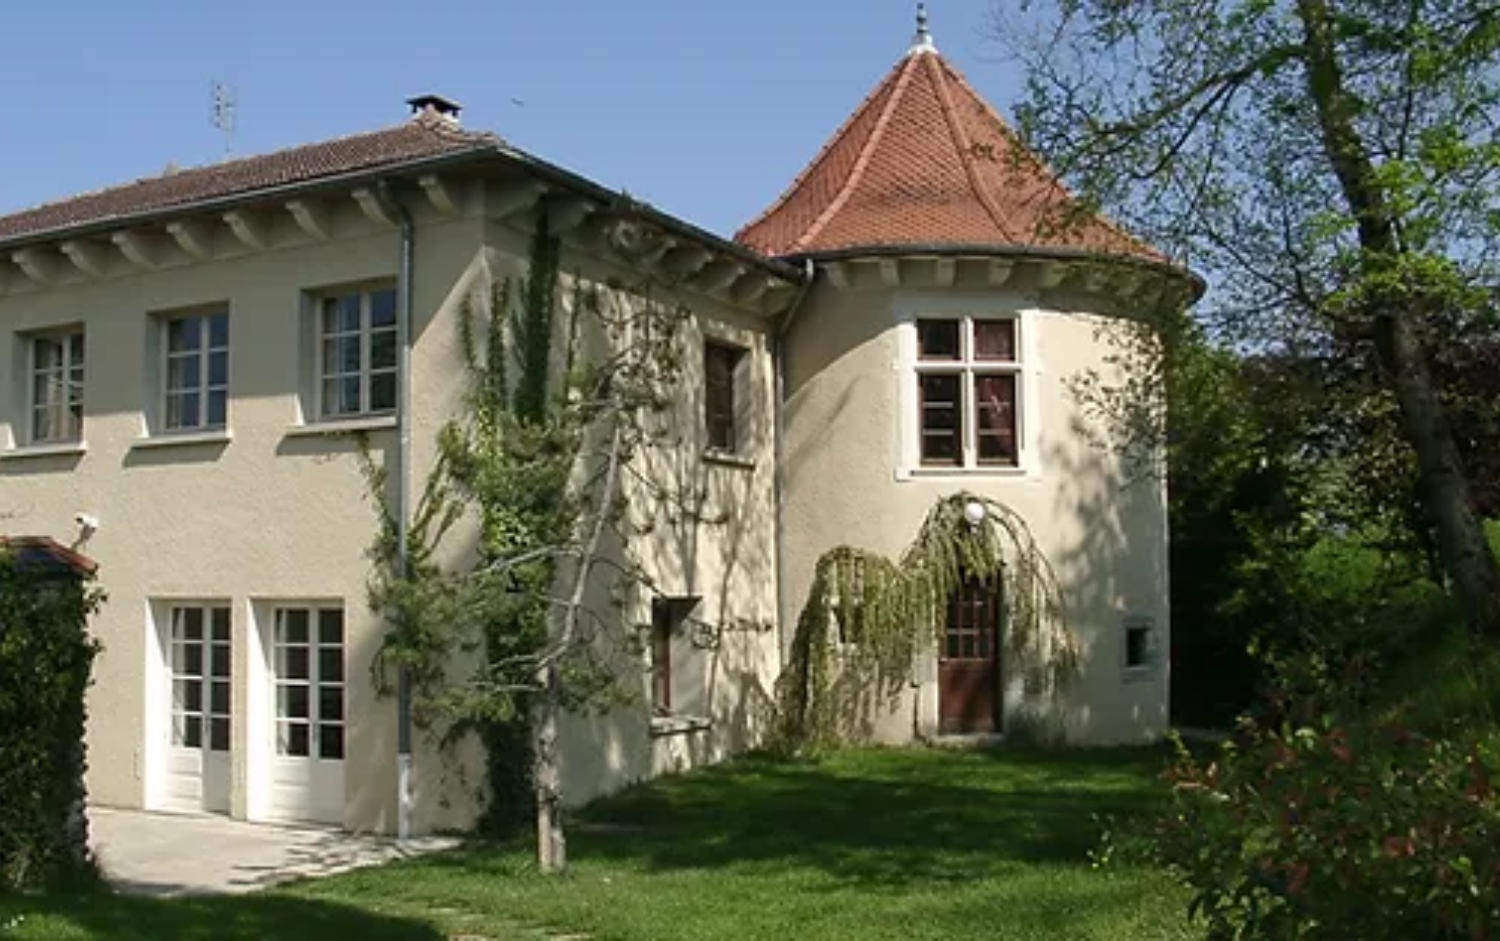 Château de blagneux